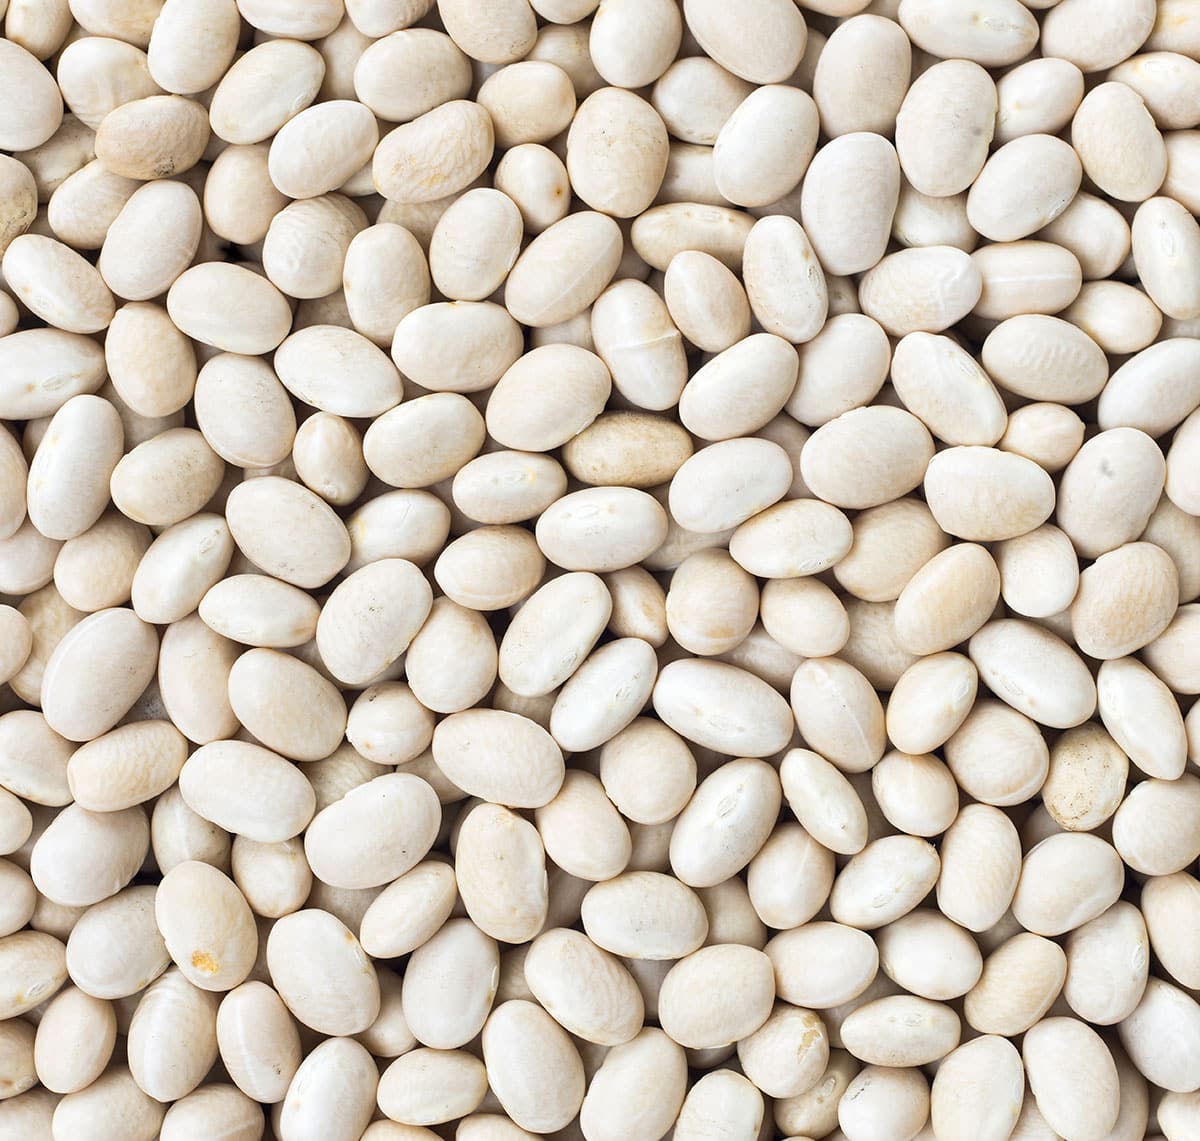 Many navy beans.